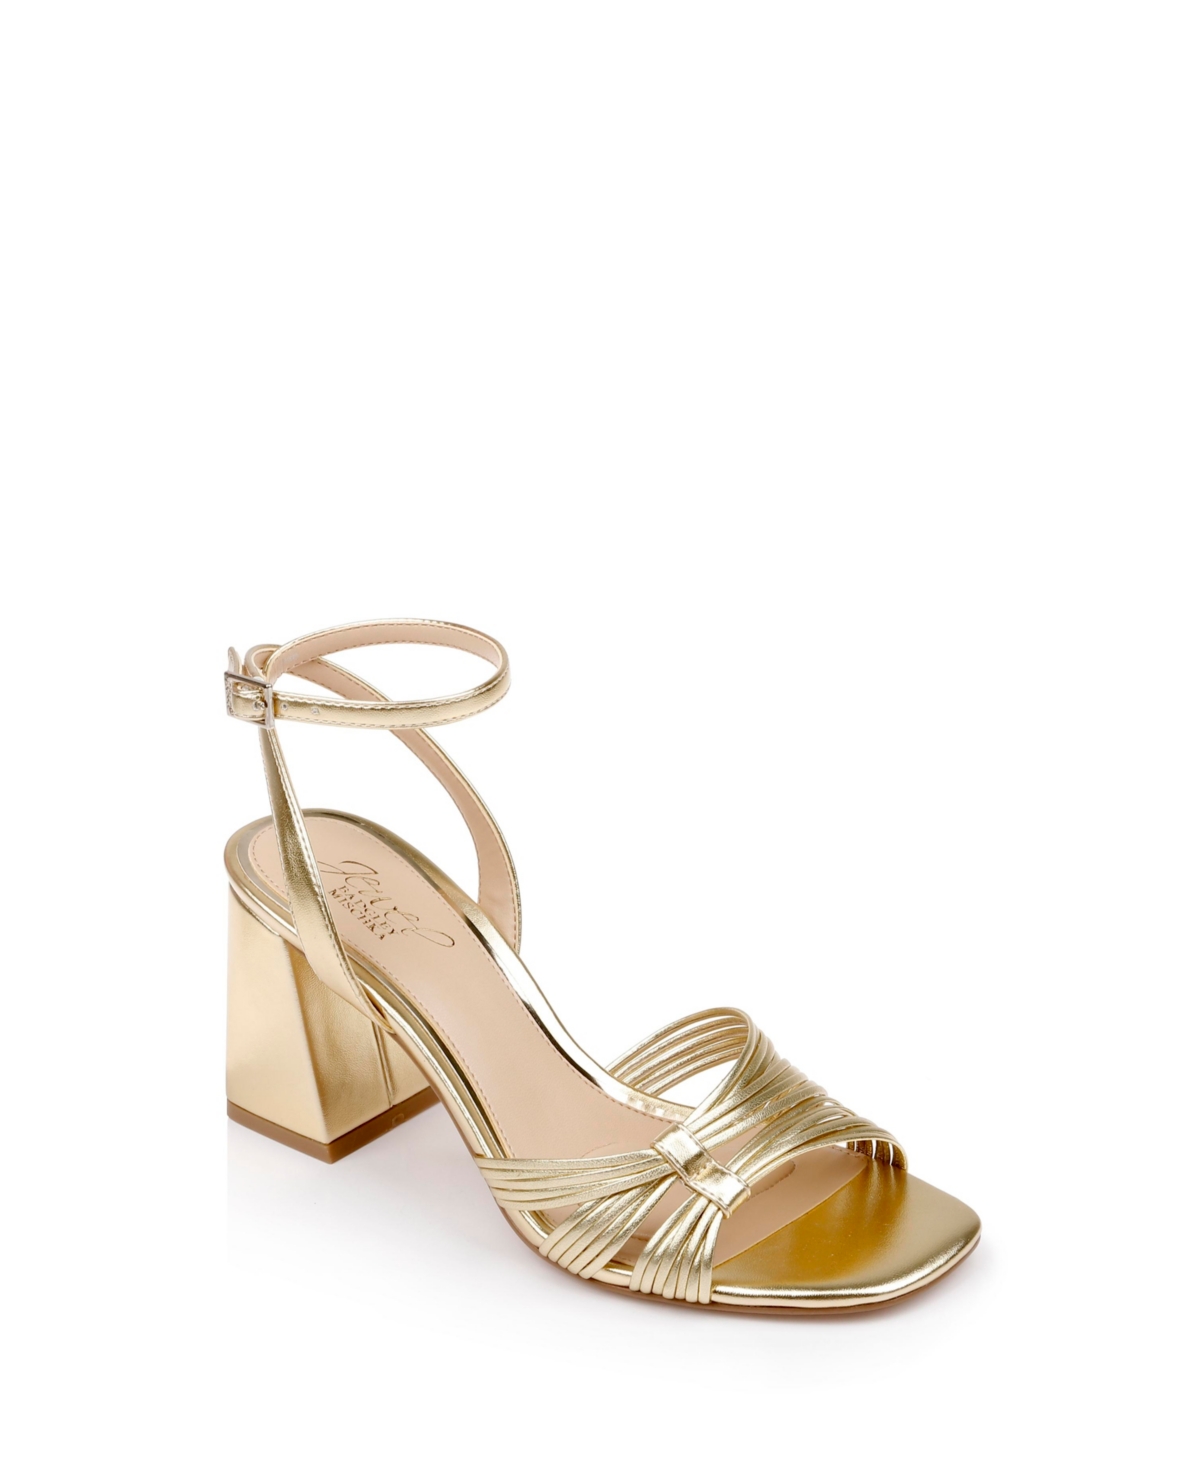 Jewel Badgley Mischka Women's Michelle Evening Block Heel Sandals In Gold Metallic